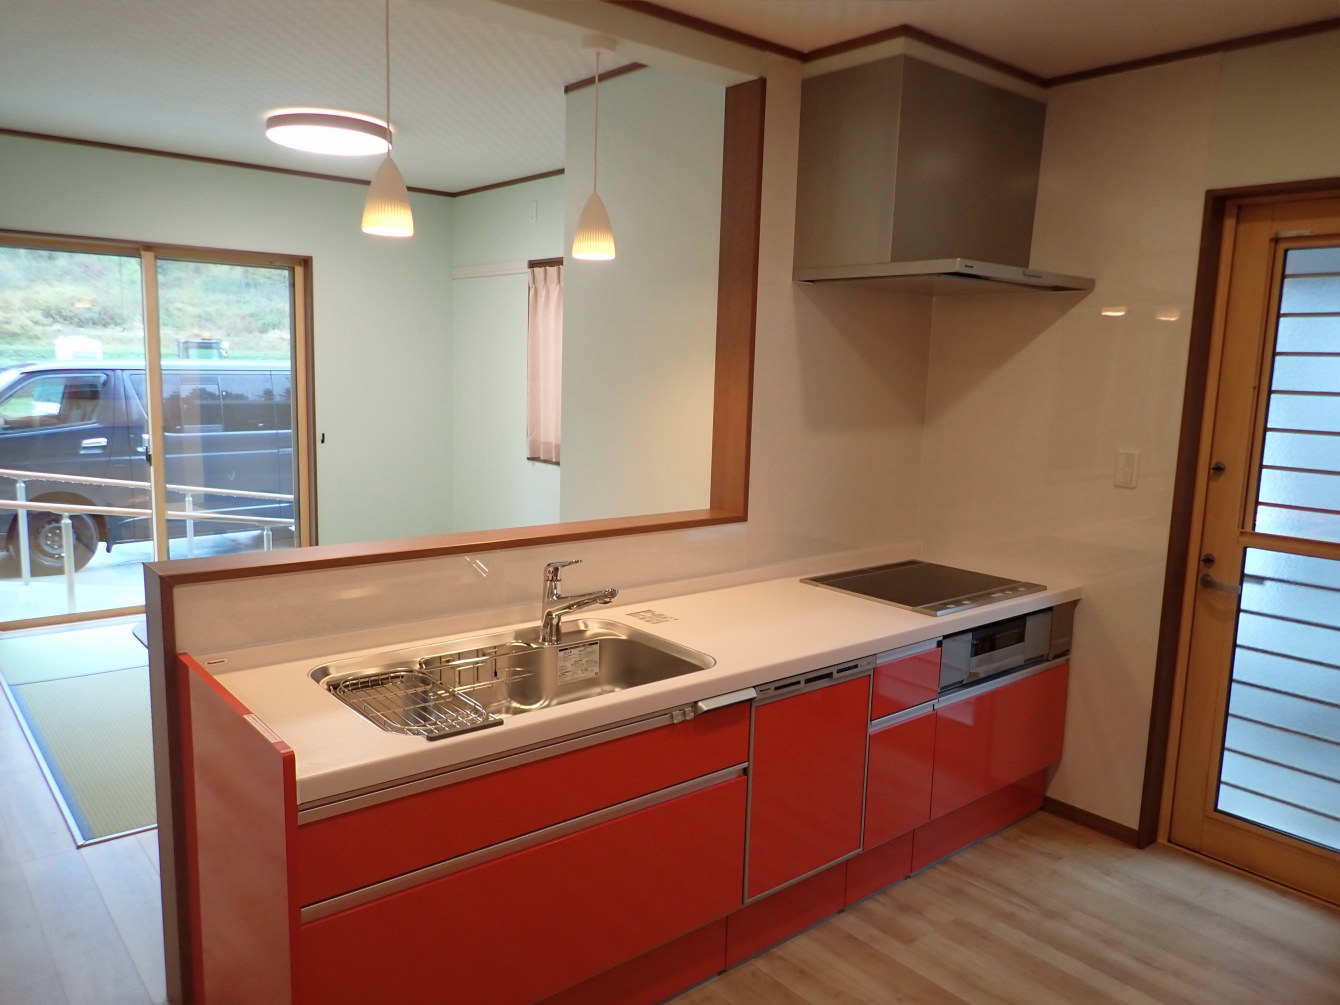 南相馬市の新築施工例、自然あふれる2世帯住宅・キッチン台所